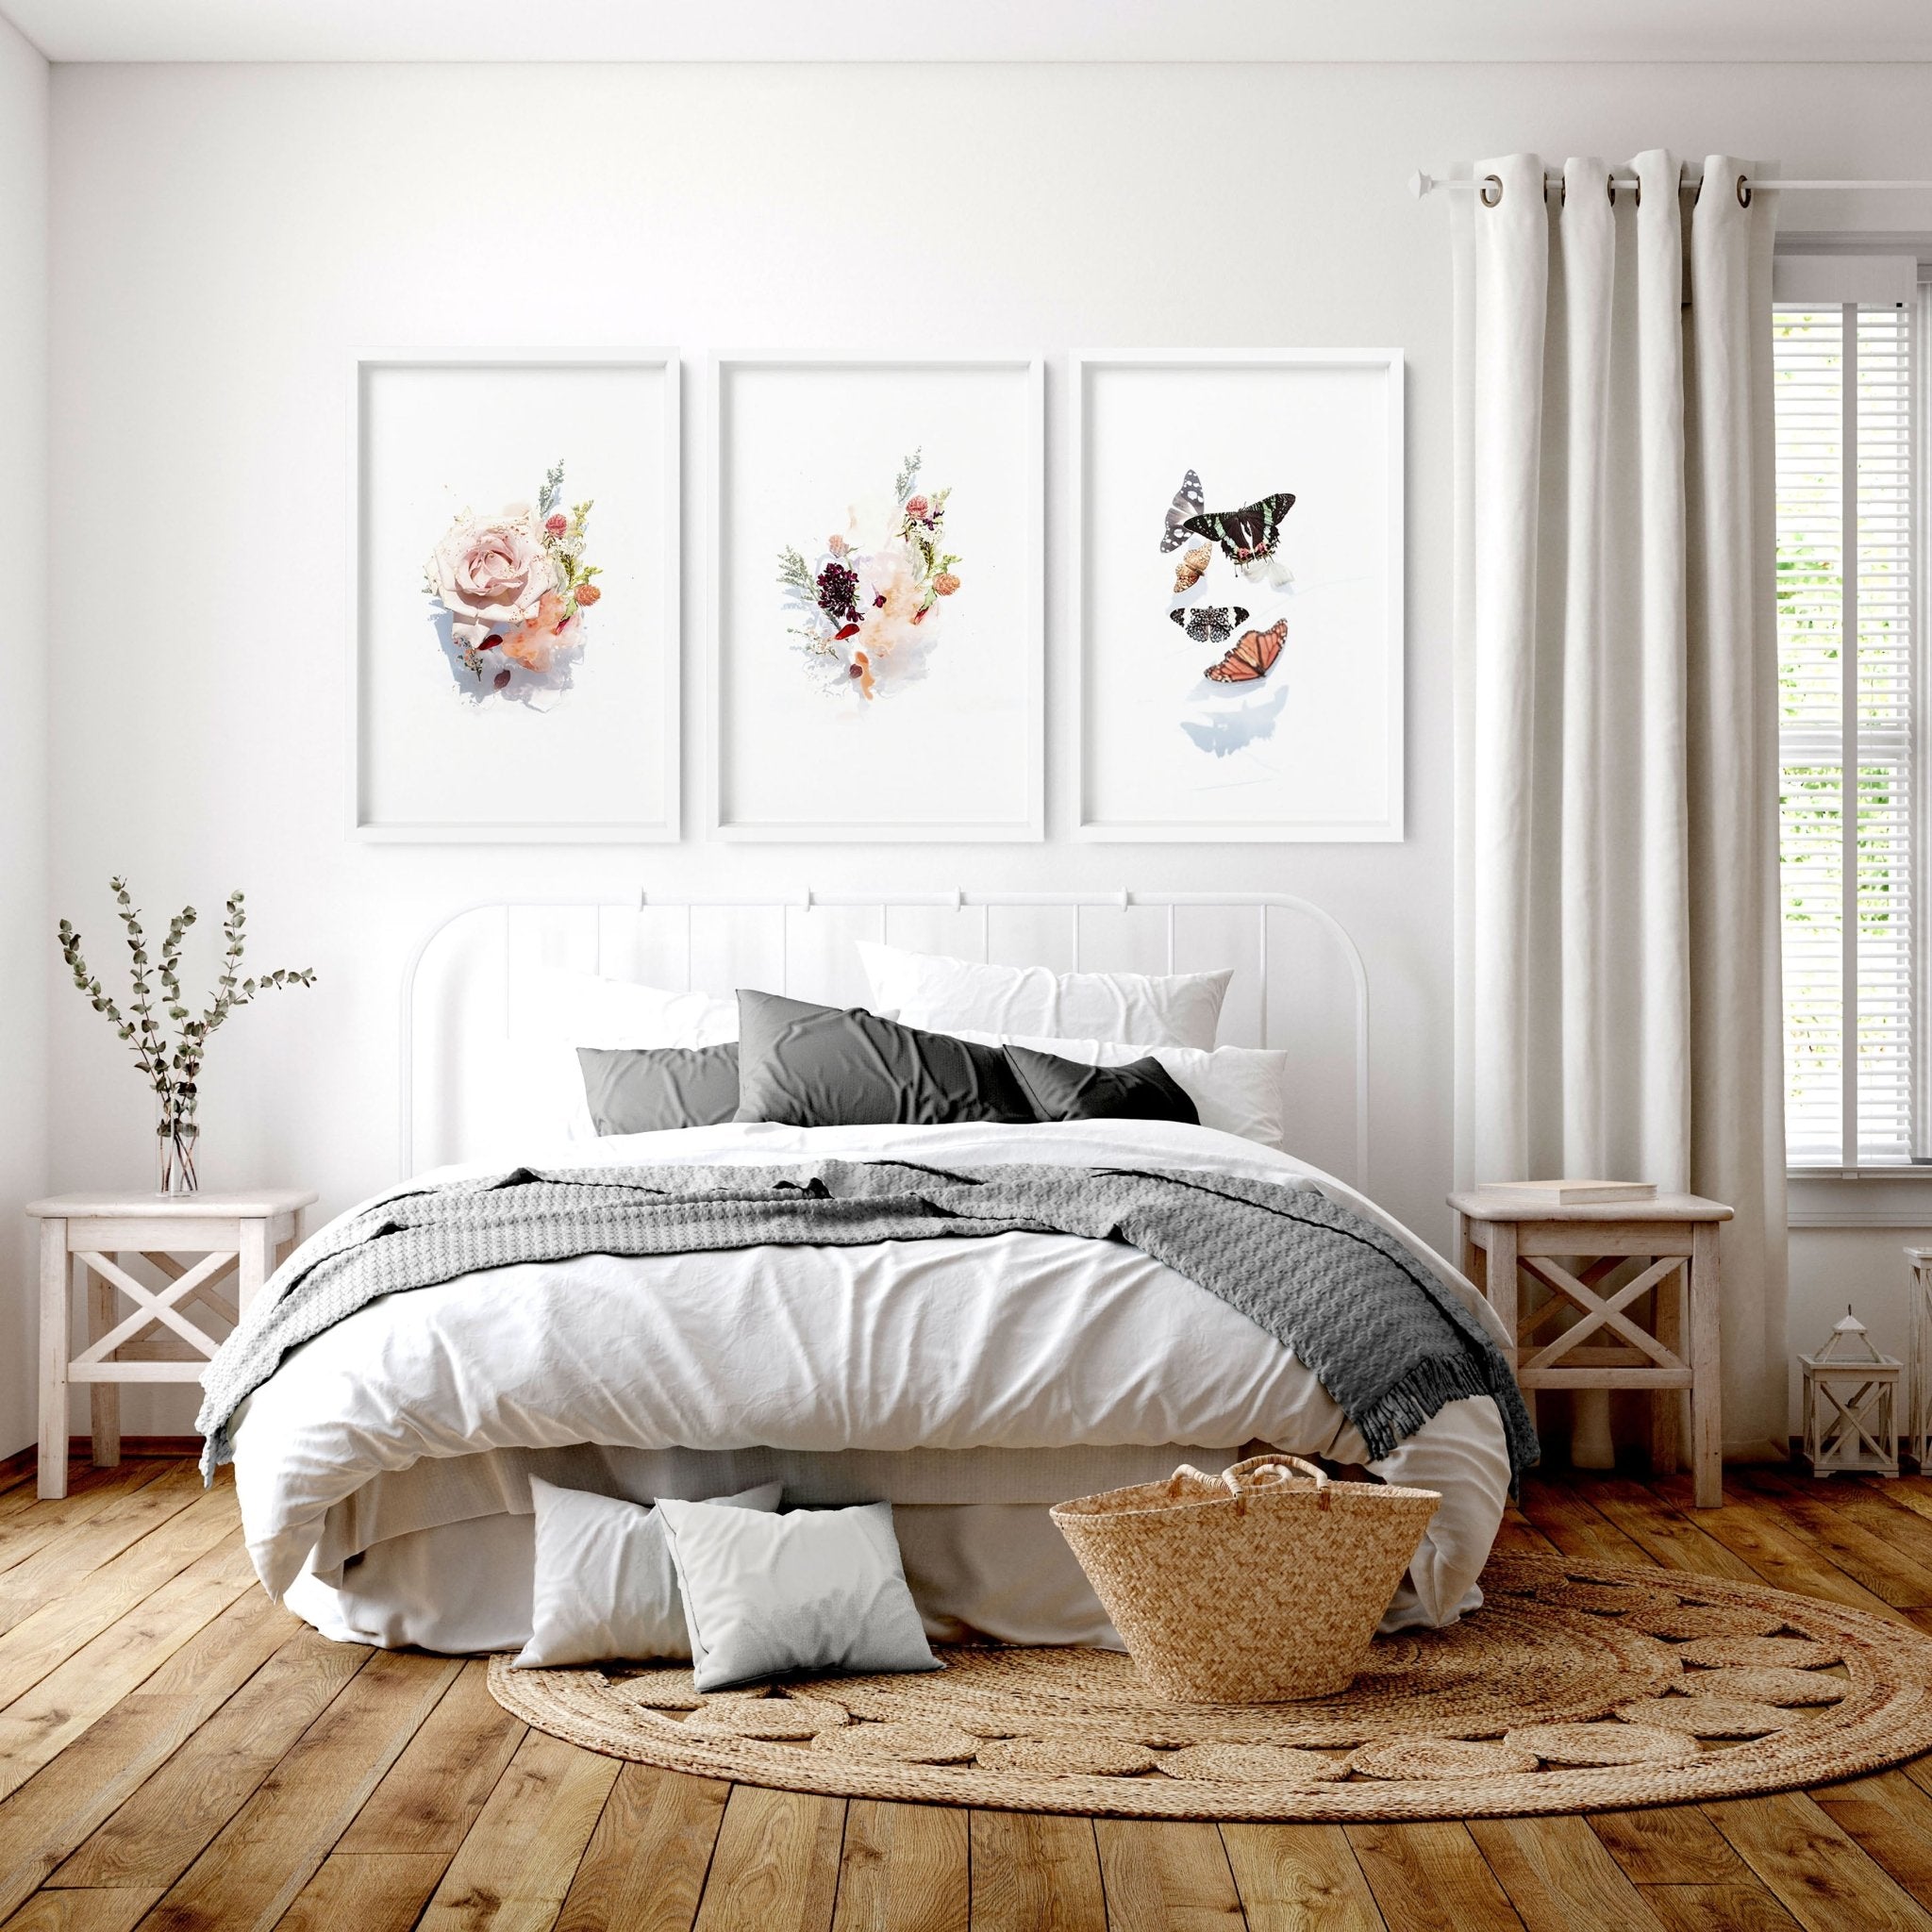 Shabby Chic Sobre la cama Decoración enmarcada Juego de impresión de arte de pared de 3 piezas para dormitorio, Trendy Cottage core Designer Wall Art impresiones para decoración de apartamento